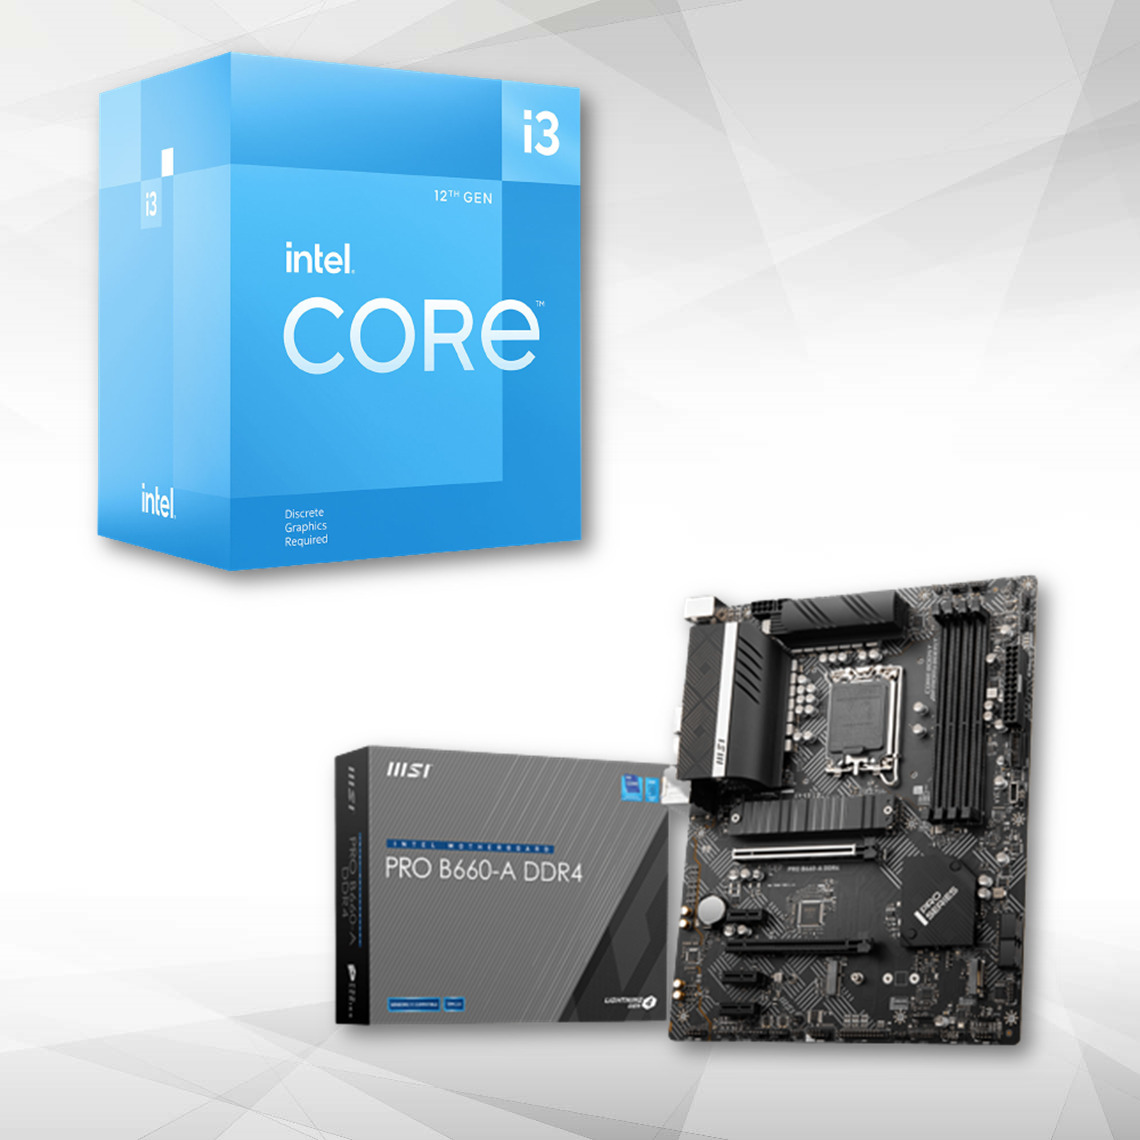 Intel - Intel Core i3-12100F (3.3 GHz / 4.3 GHz) + Carte mère PRO B660 A DDR4 - Packs Processeur, Carte mère et Mémoire